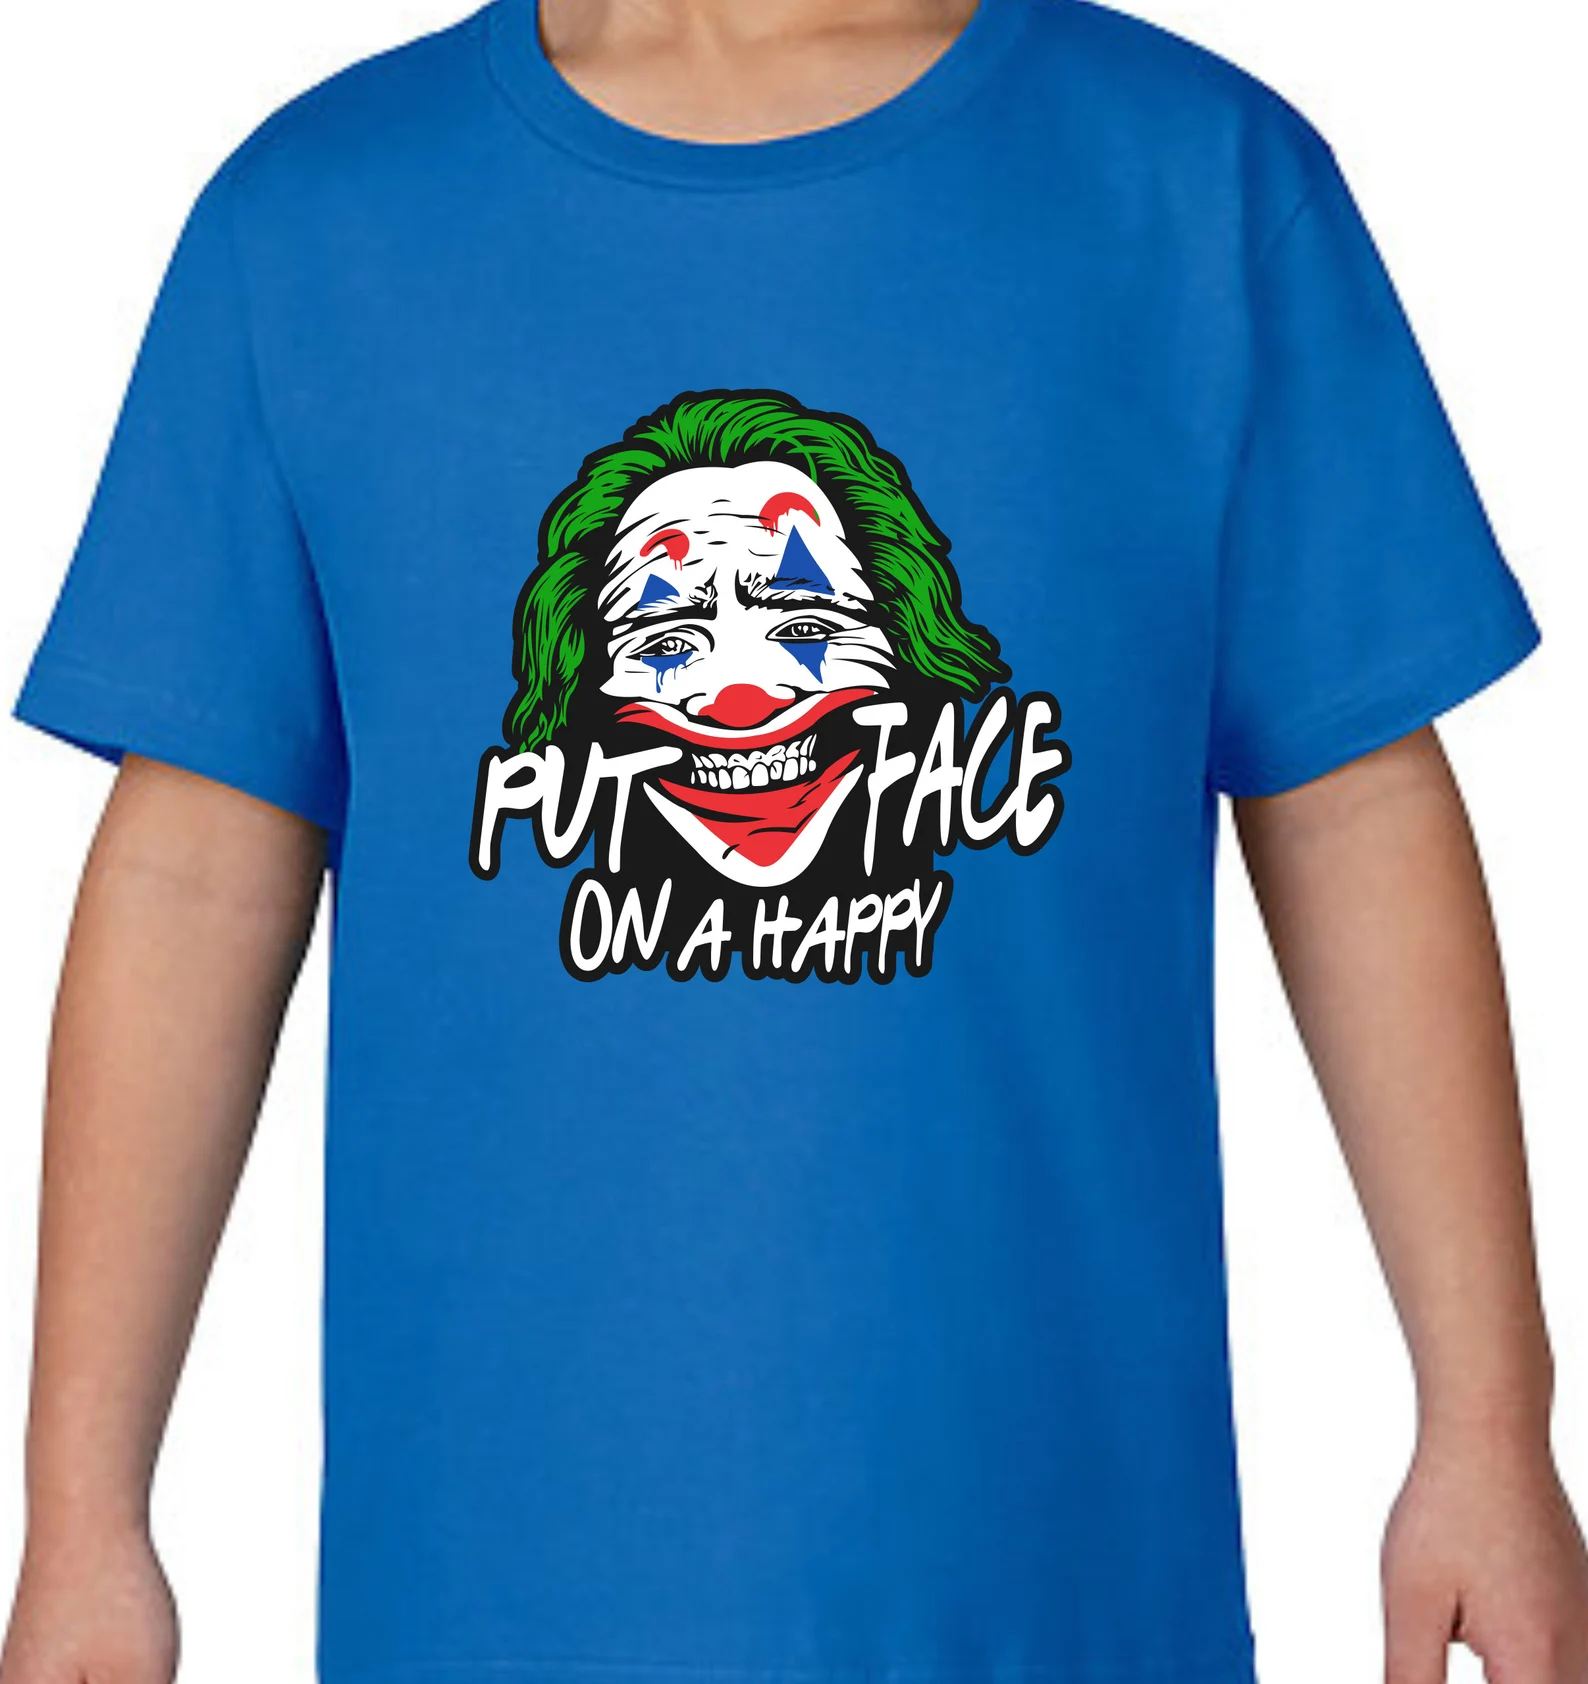 Classic blue t-shirt with Joker face.